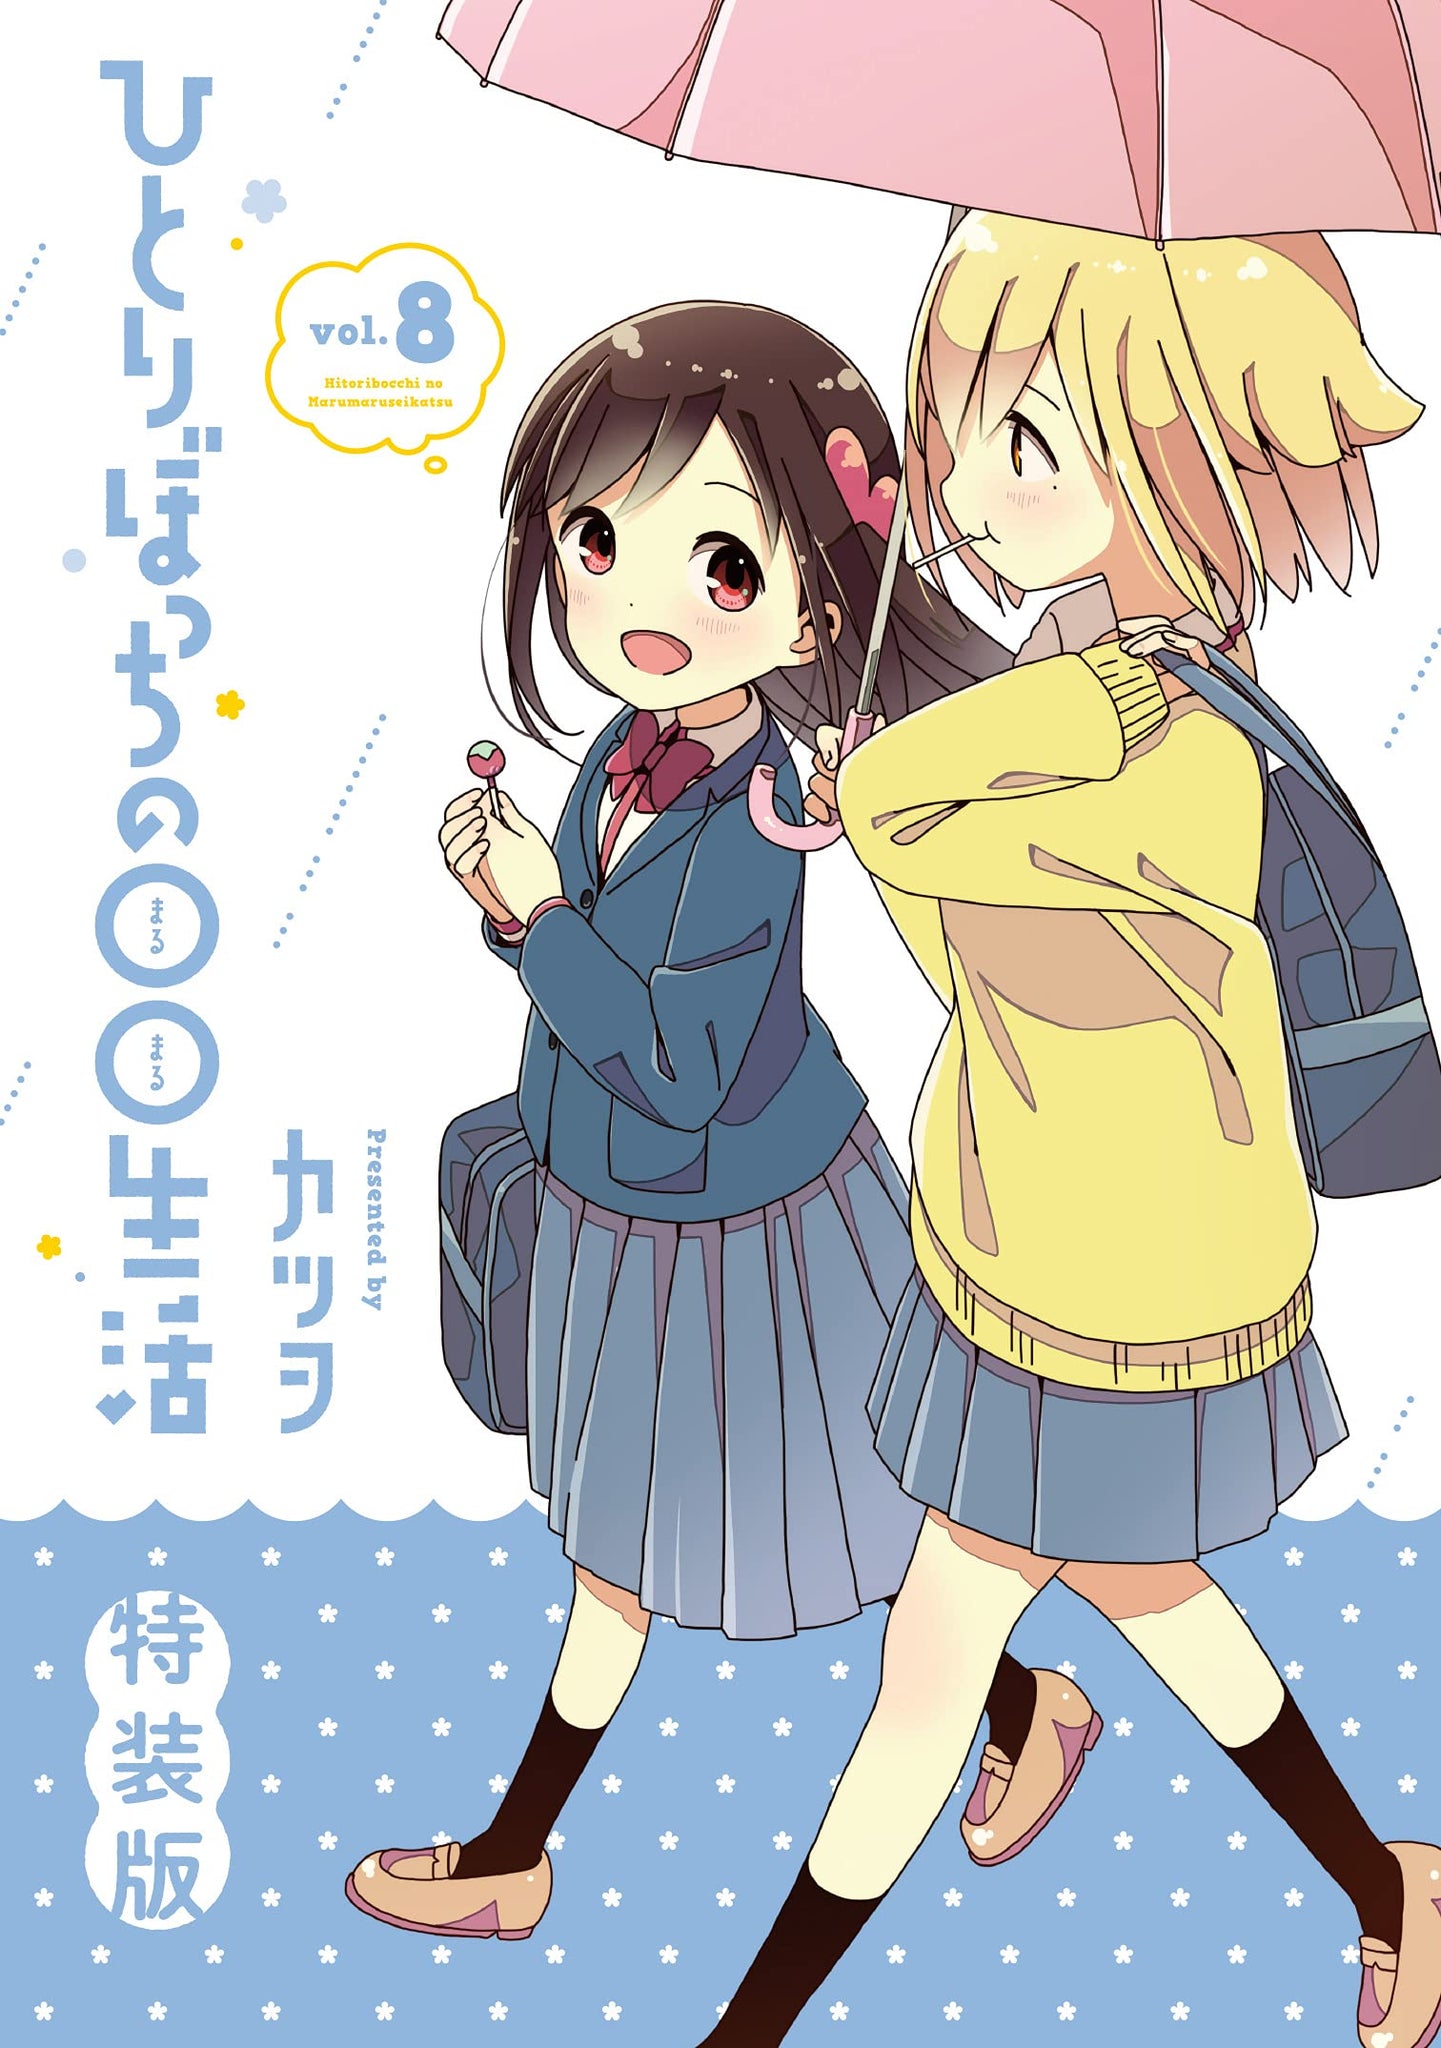 Hitori Bocchi Anime, Manga, Otaku Products